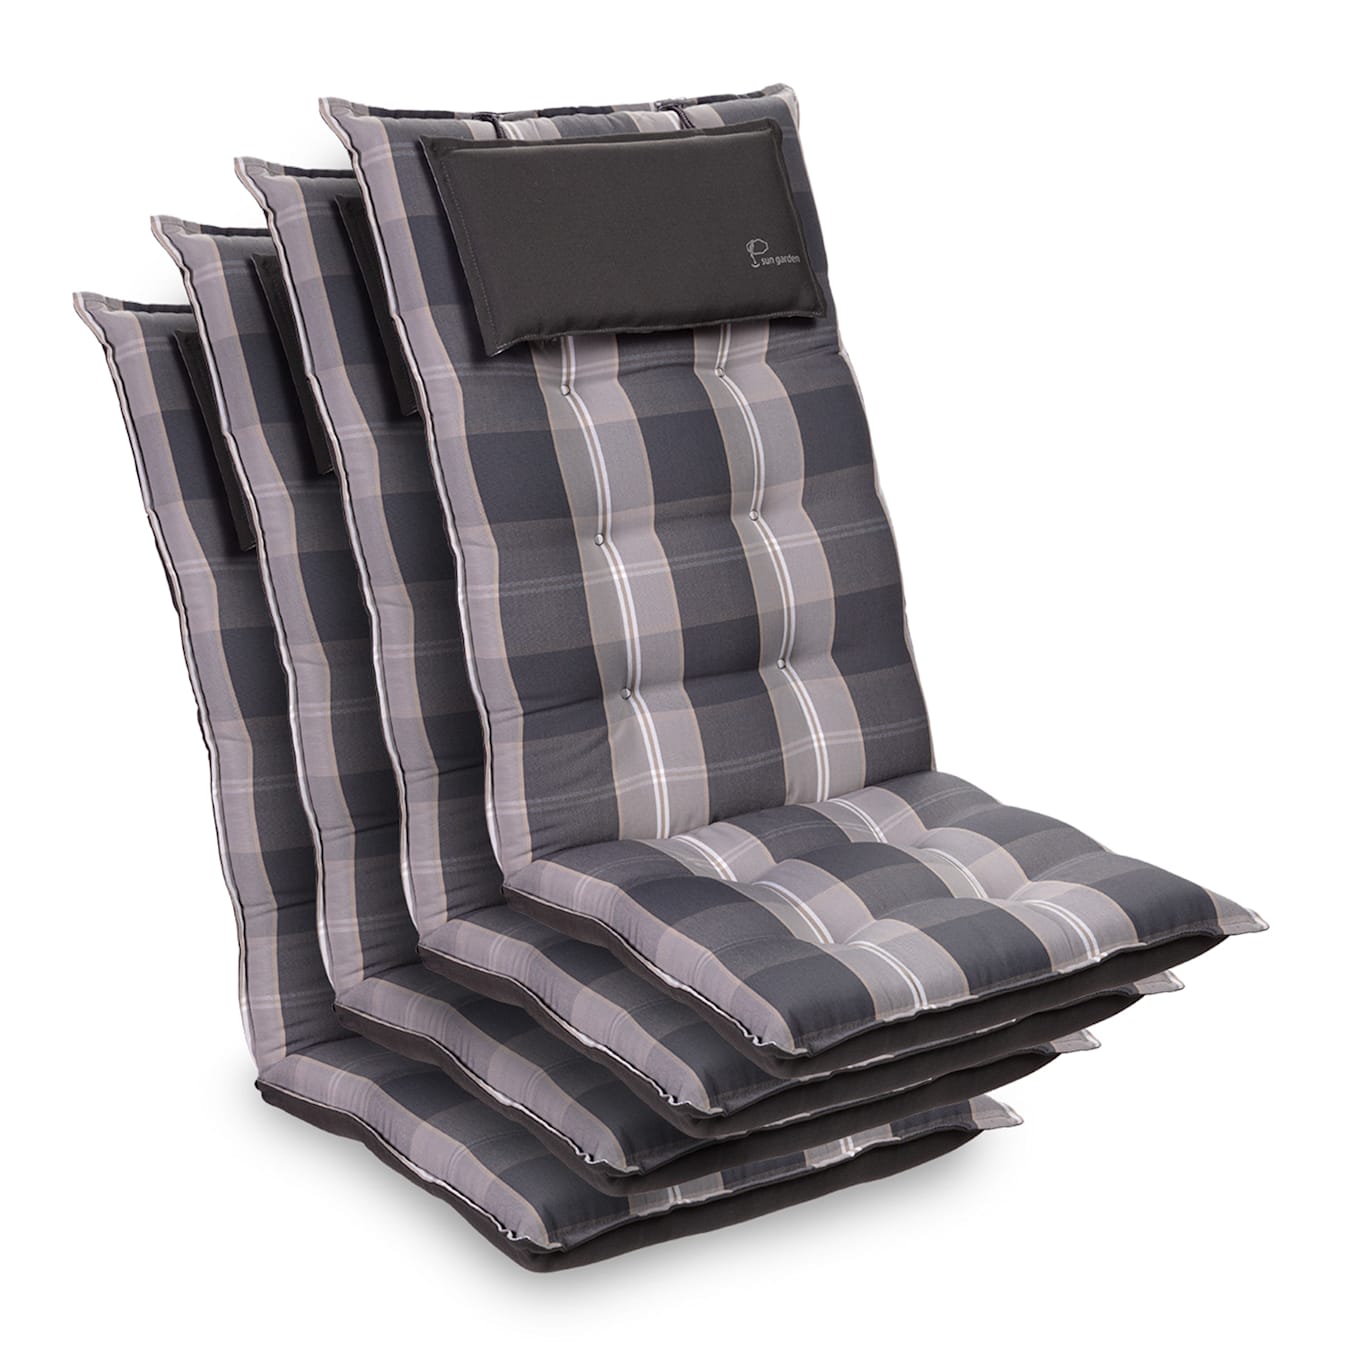 Sylt stoelkussen zitkussen hoge hoofdkussen polyester 50x120x9cm 4 x stoelkussen Licht grijs / Grijs